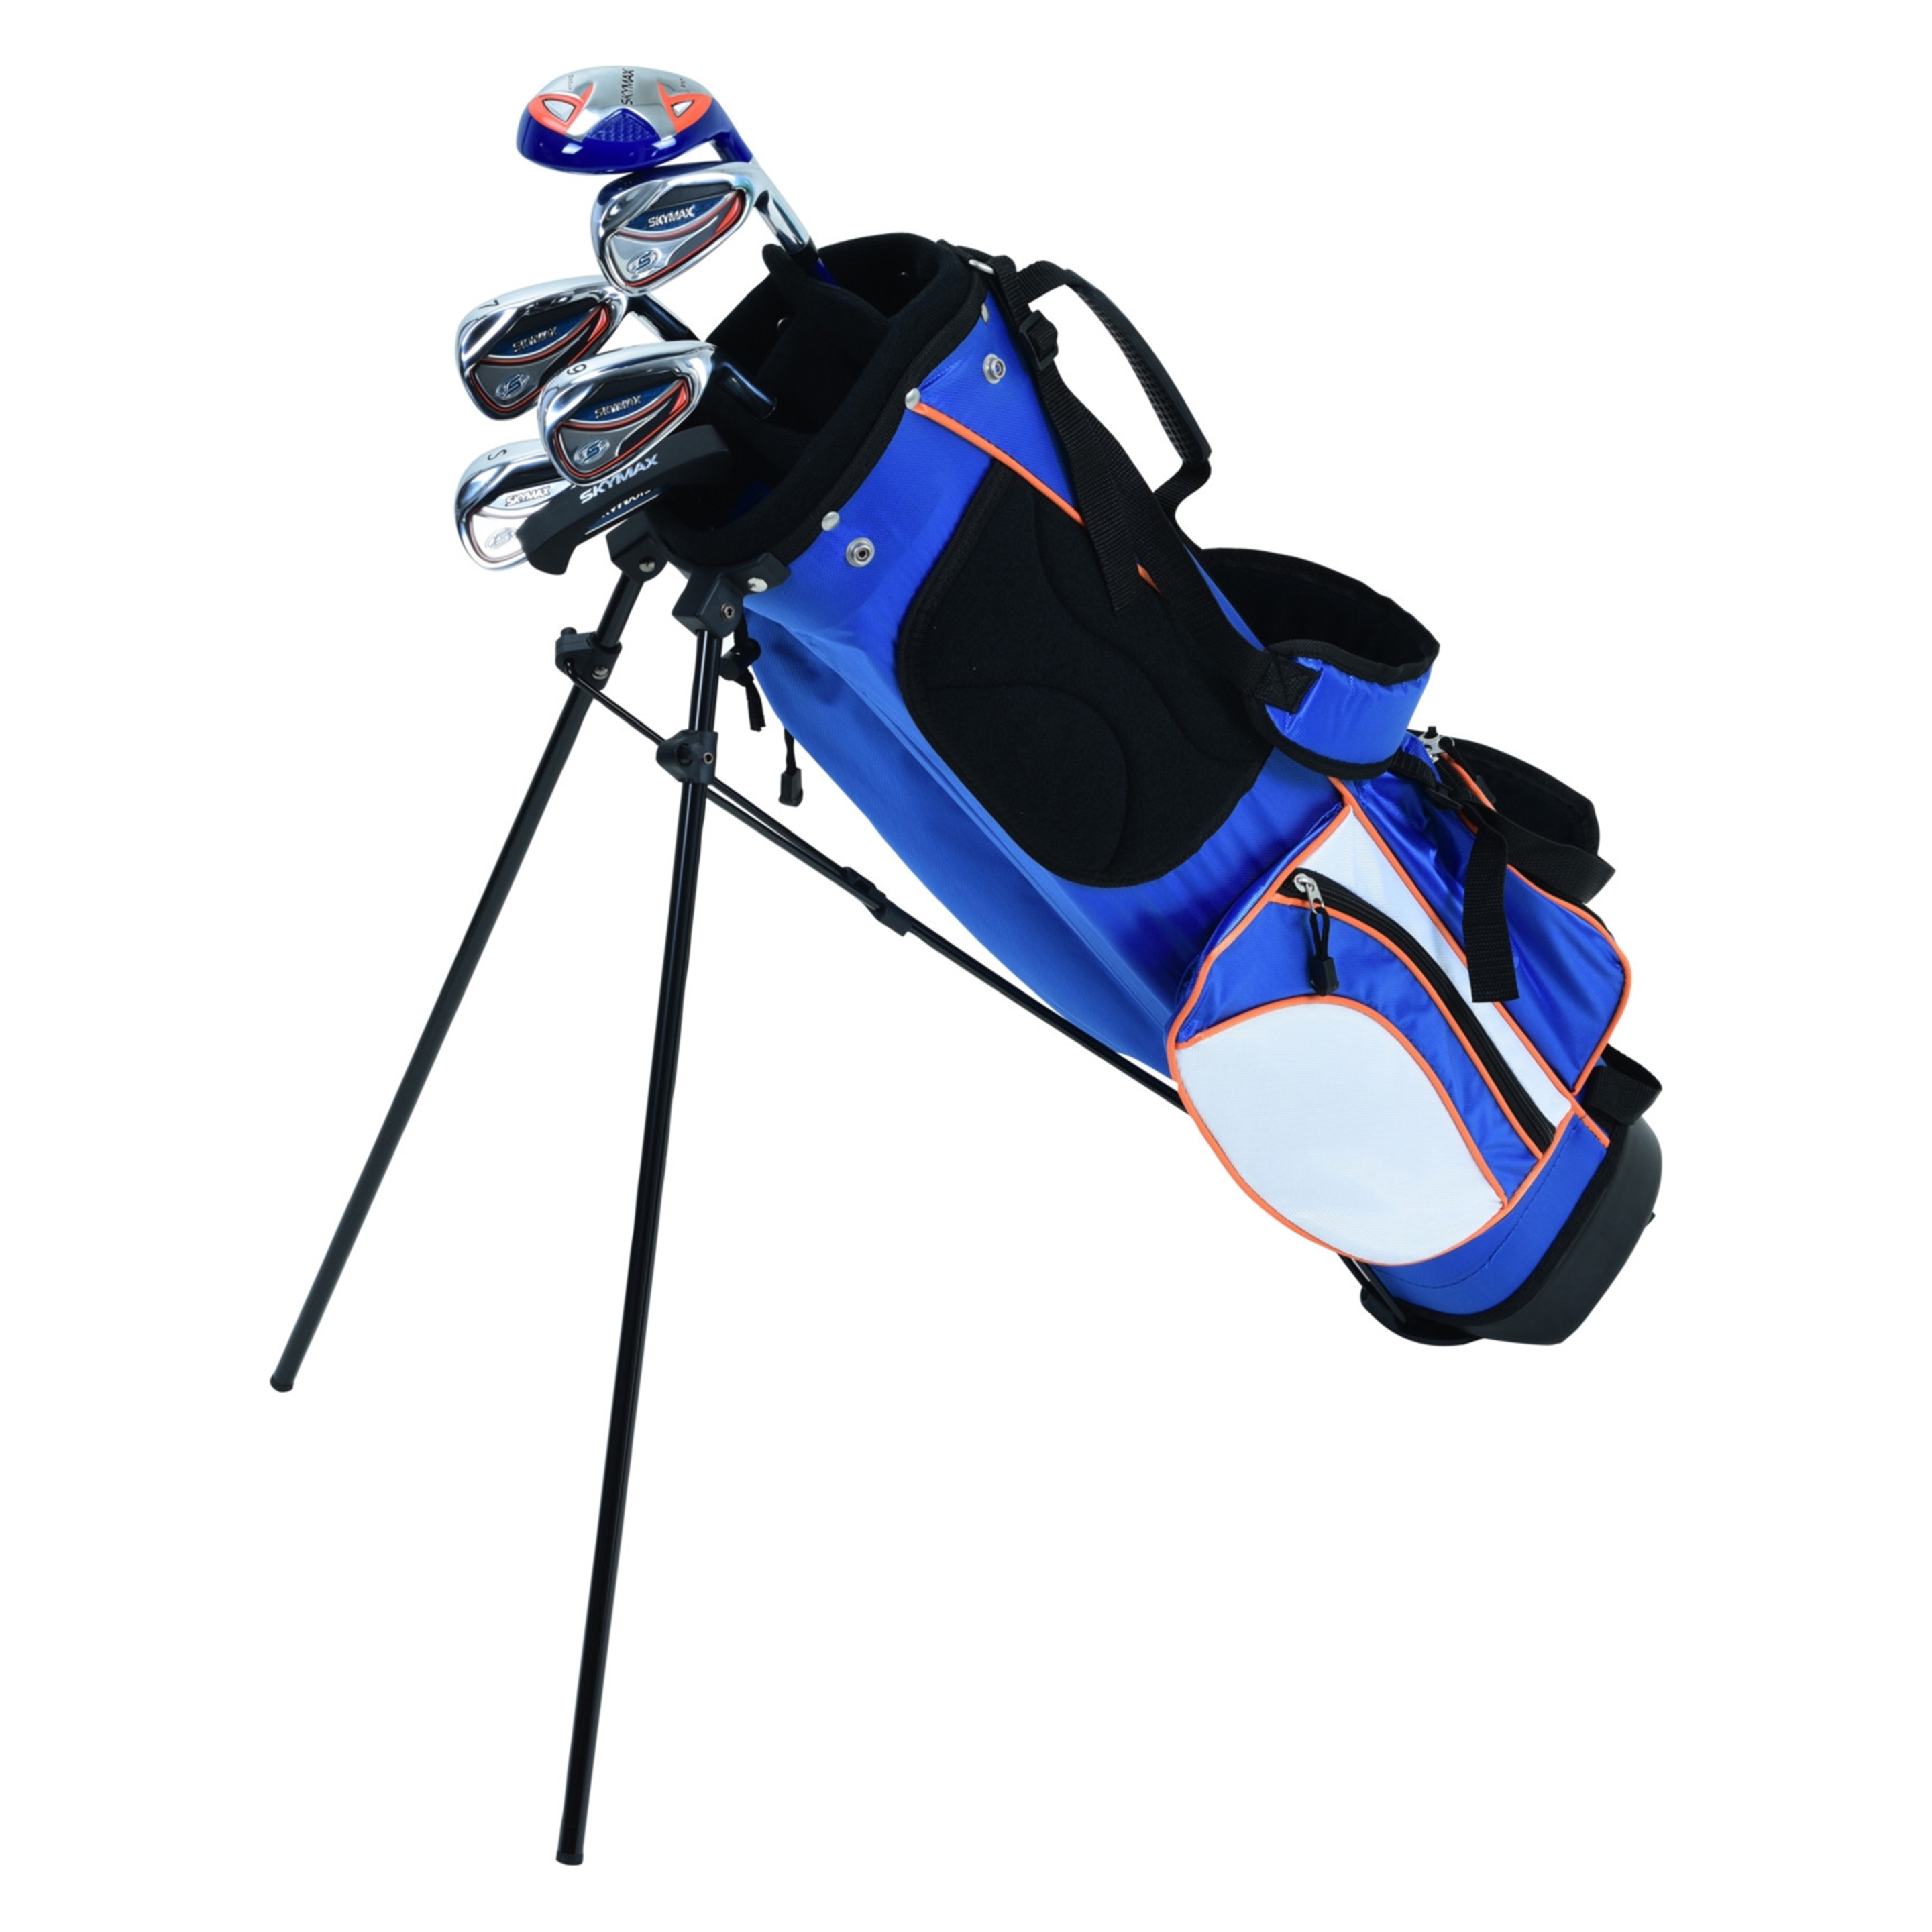 Conjunto Bolsa De Golf Más Palos  Ecd-germany Sx Junior 6-9 Rh - Azul/Blanco  MKP